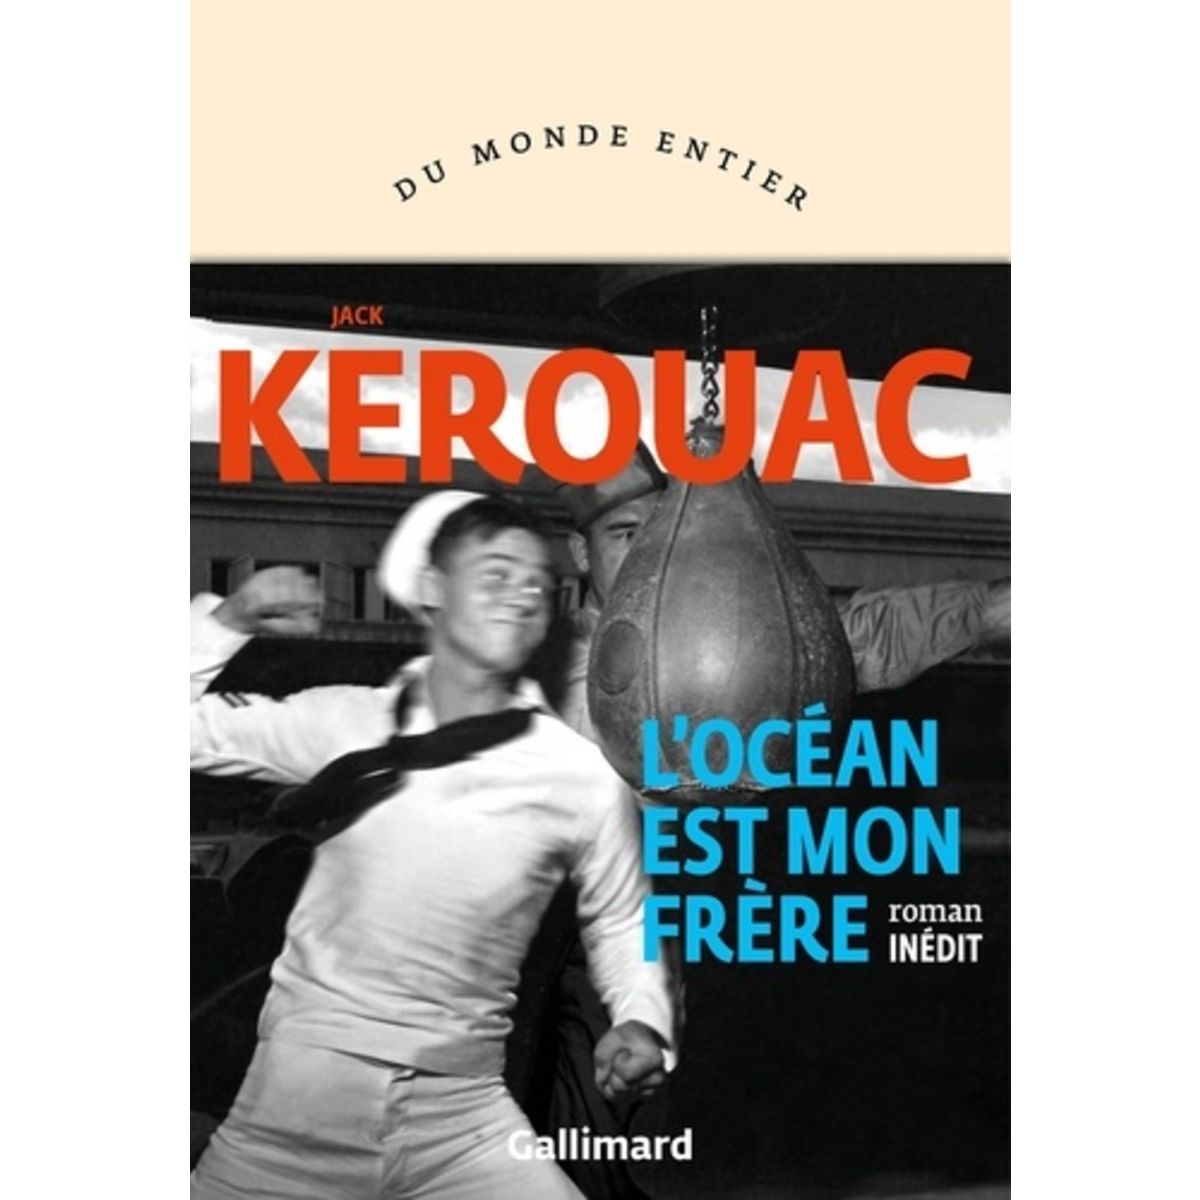  L'OCEAN EST MON FRERE, Kerouac Jack